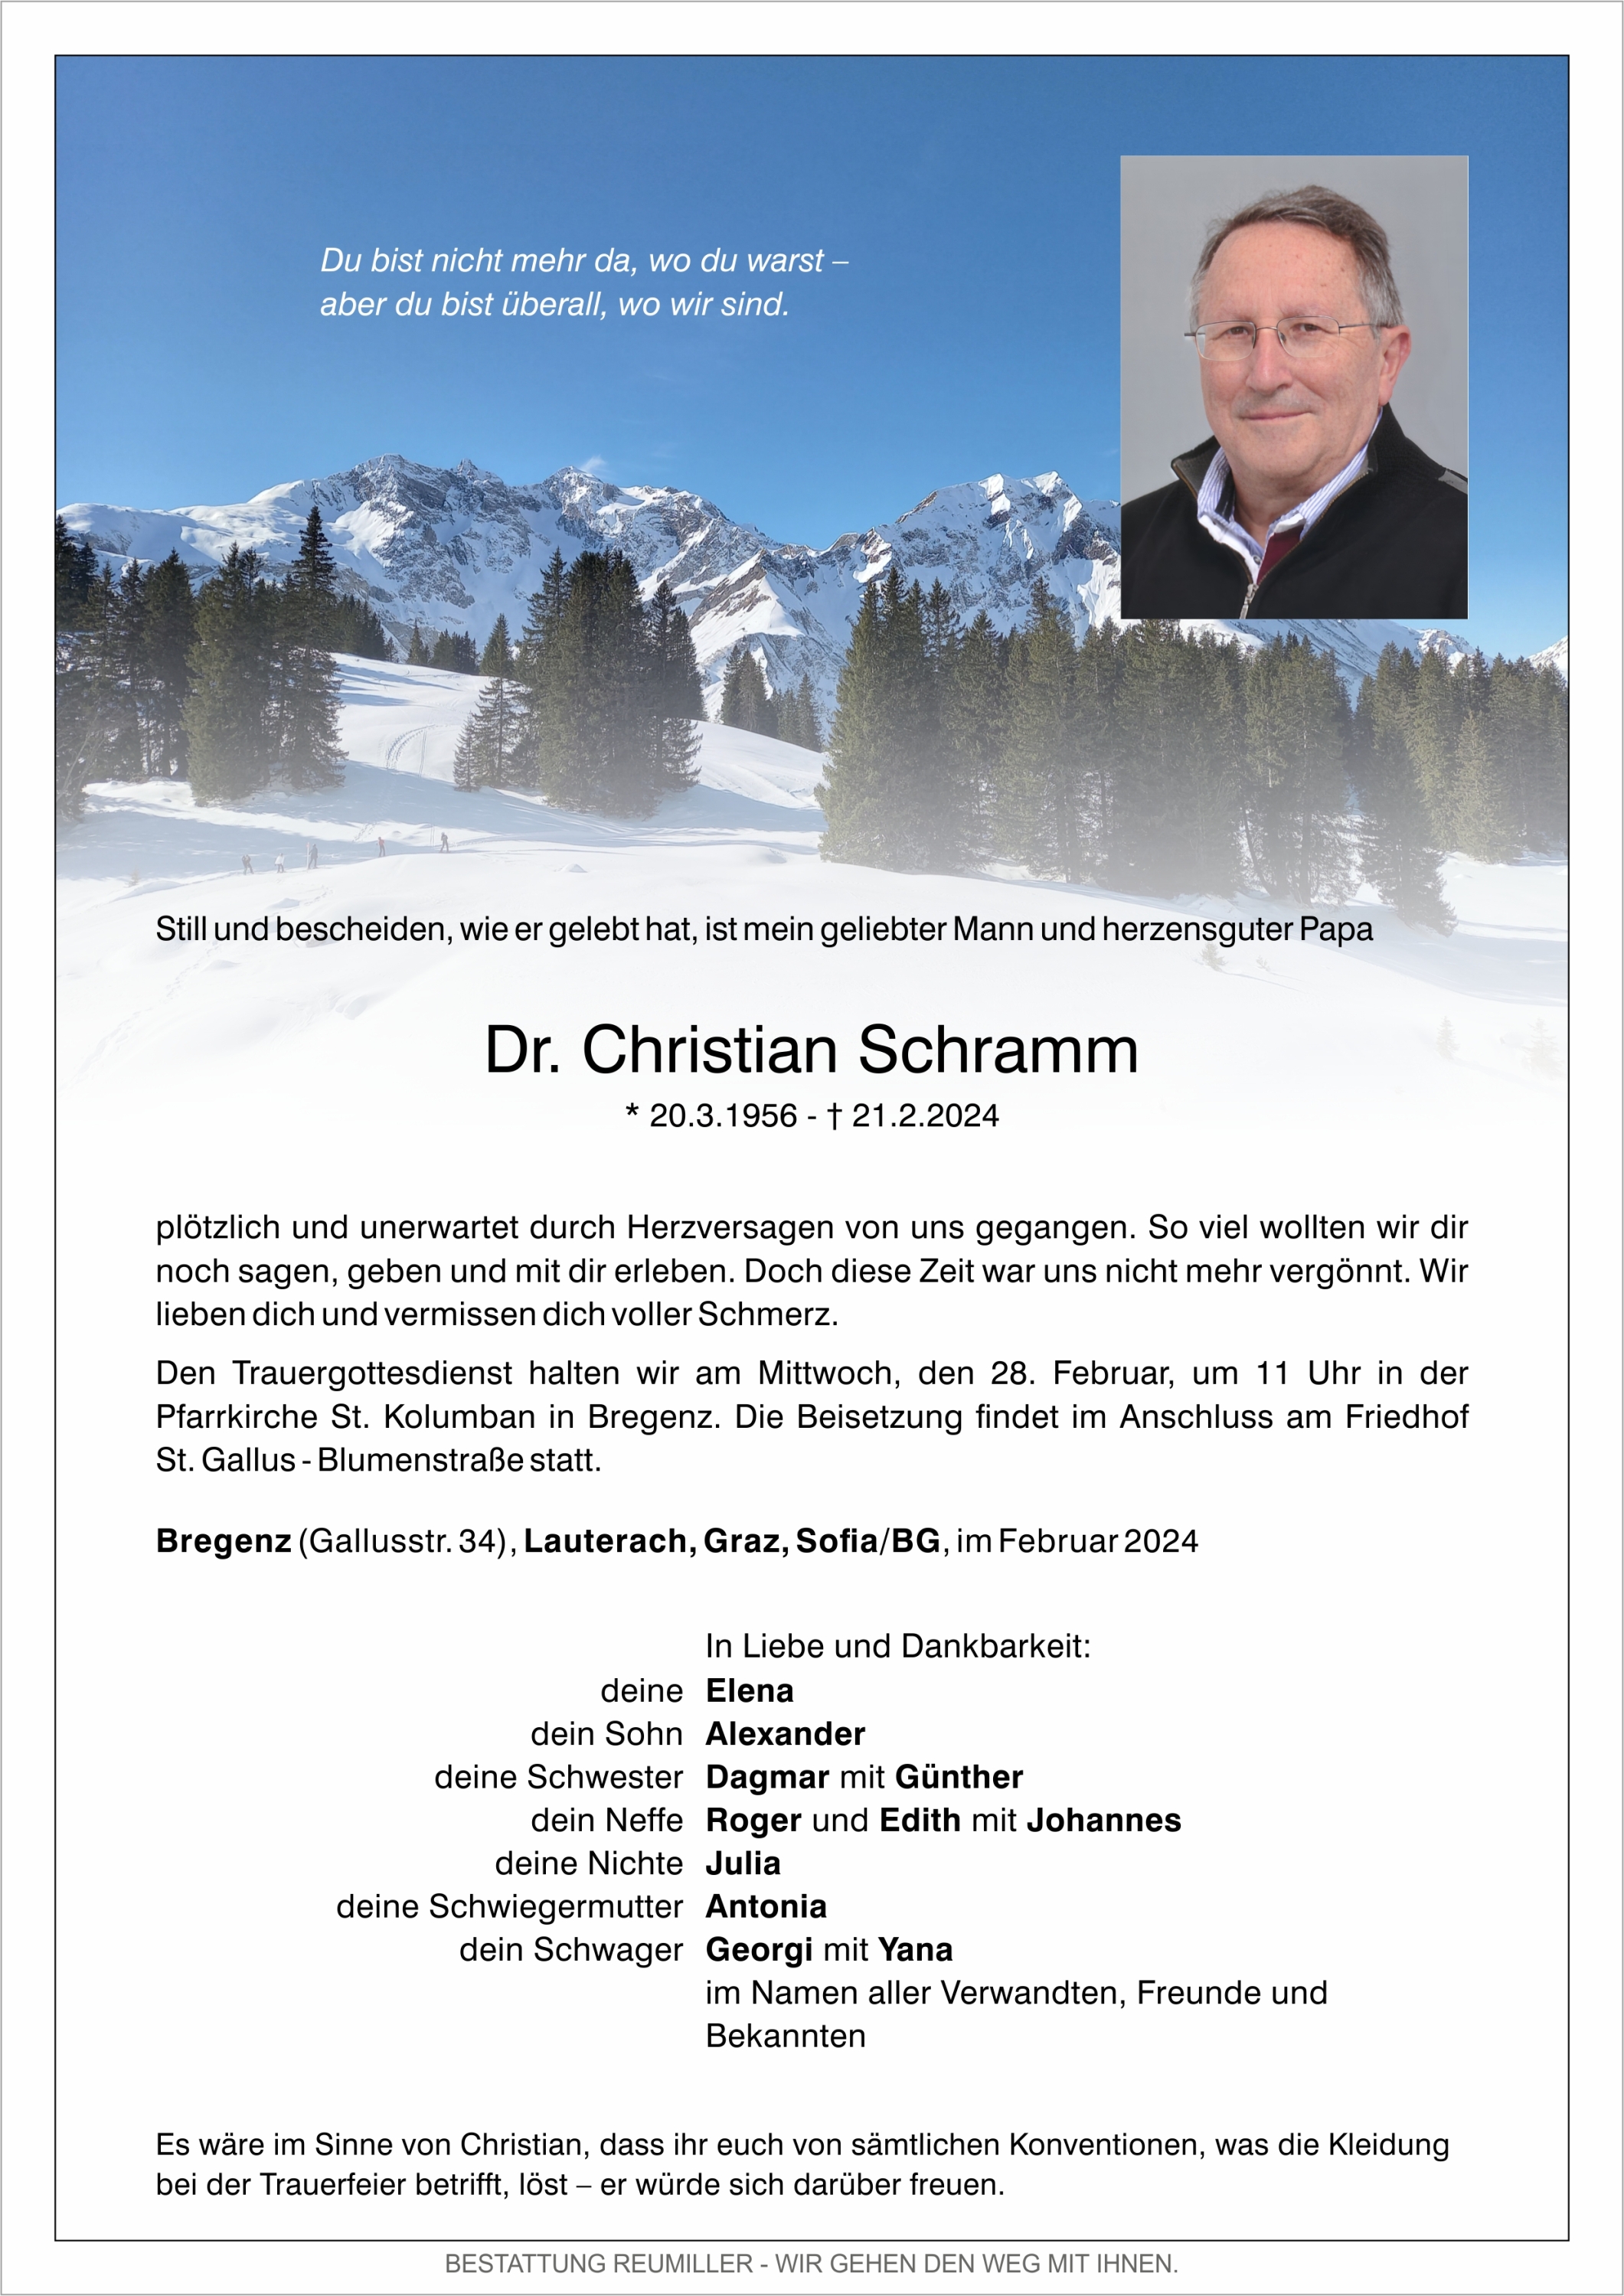 Dr. Christian Schramm